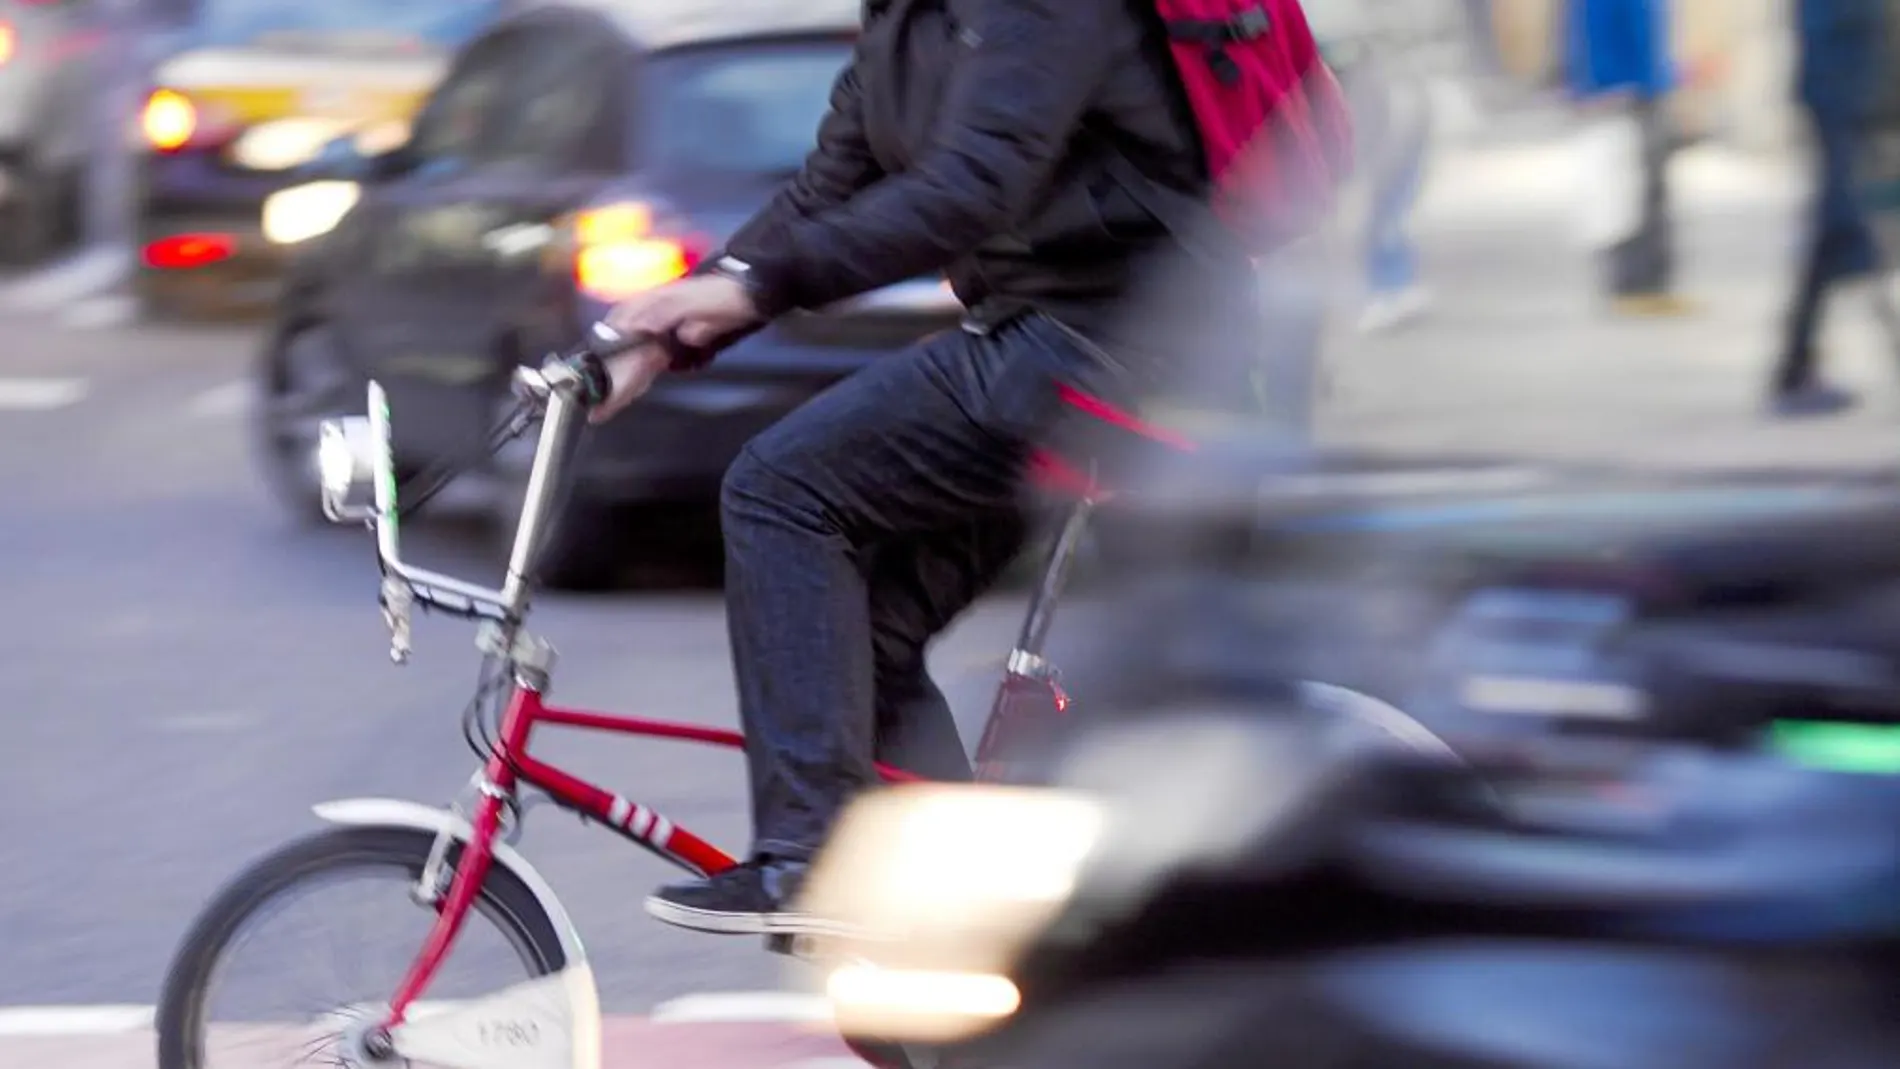 El servicio de bicicletas arrastra un déficit de 15 millones anuales